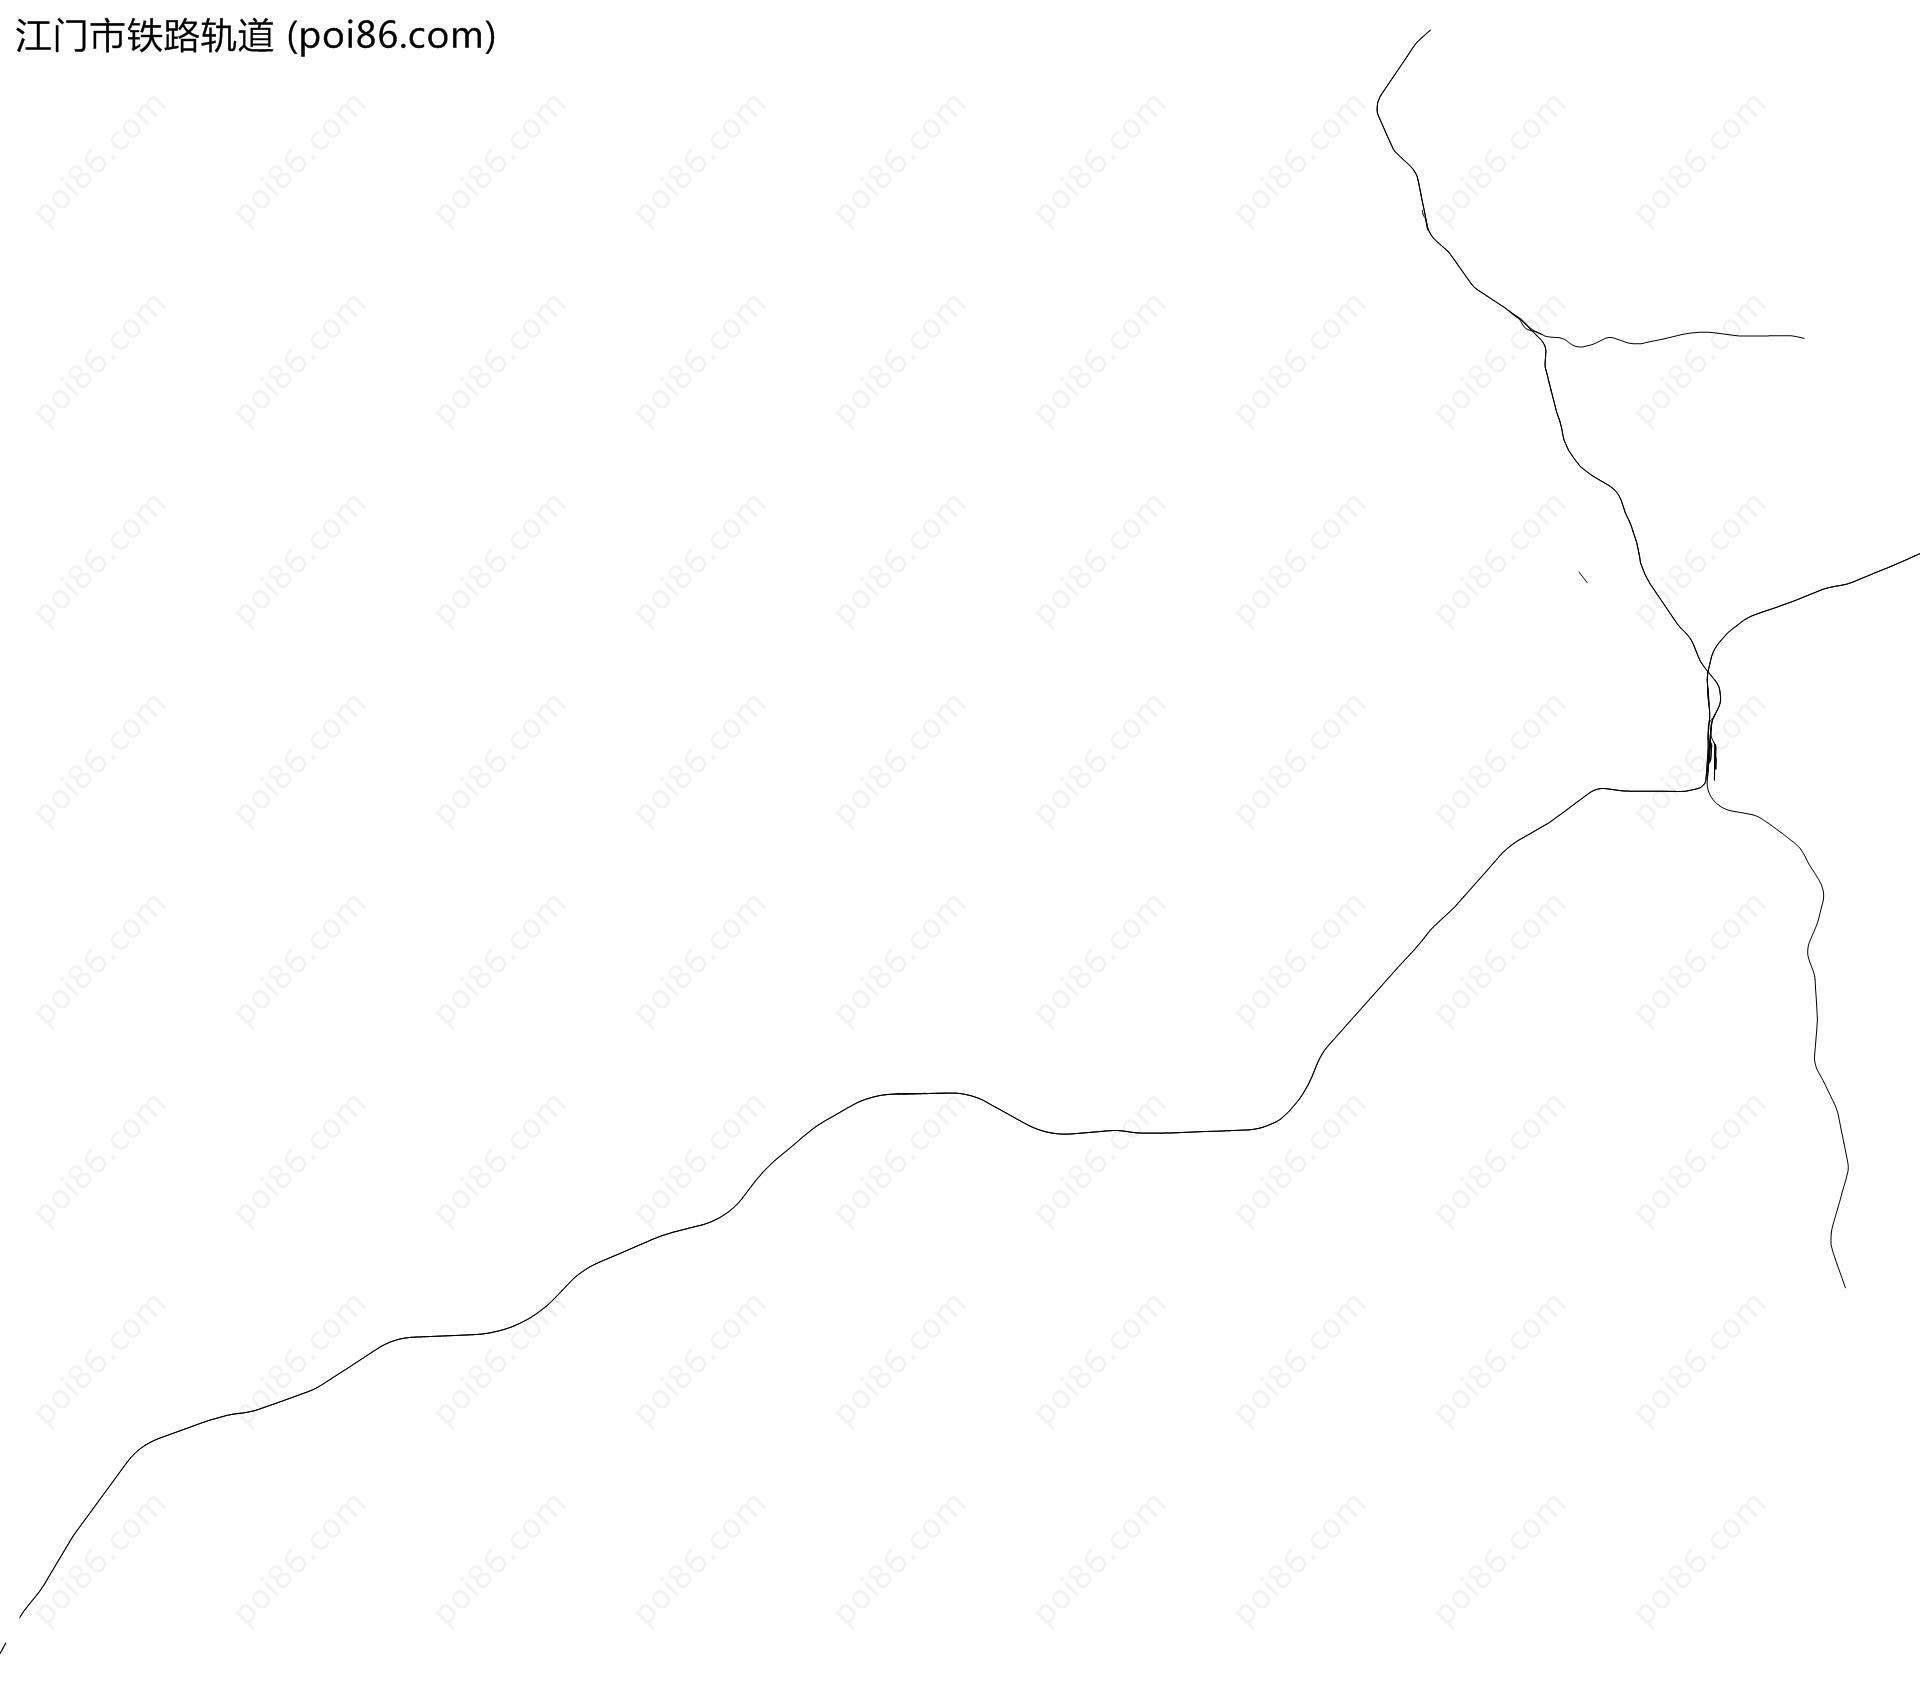 江门市铁路轨道地图